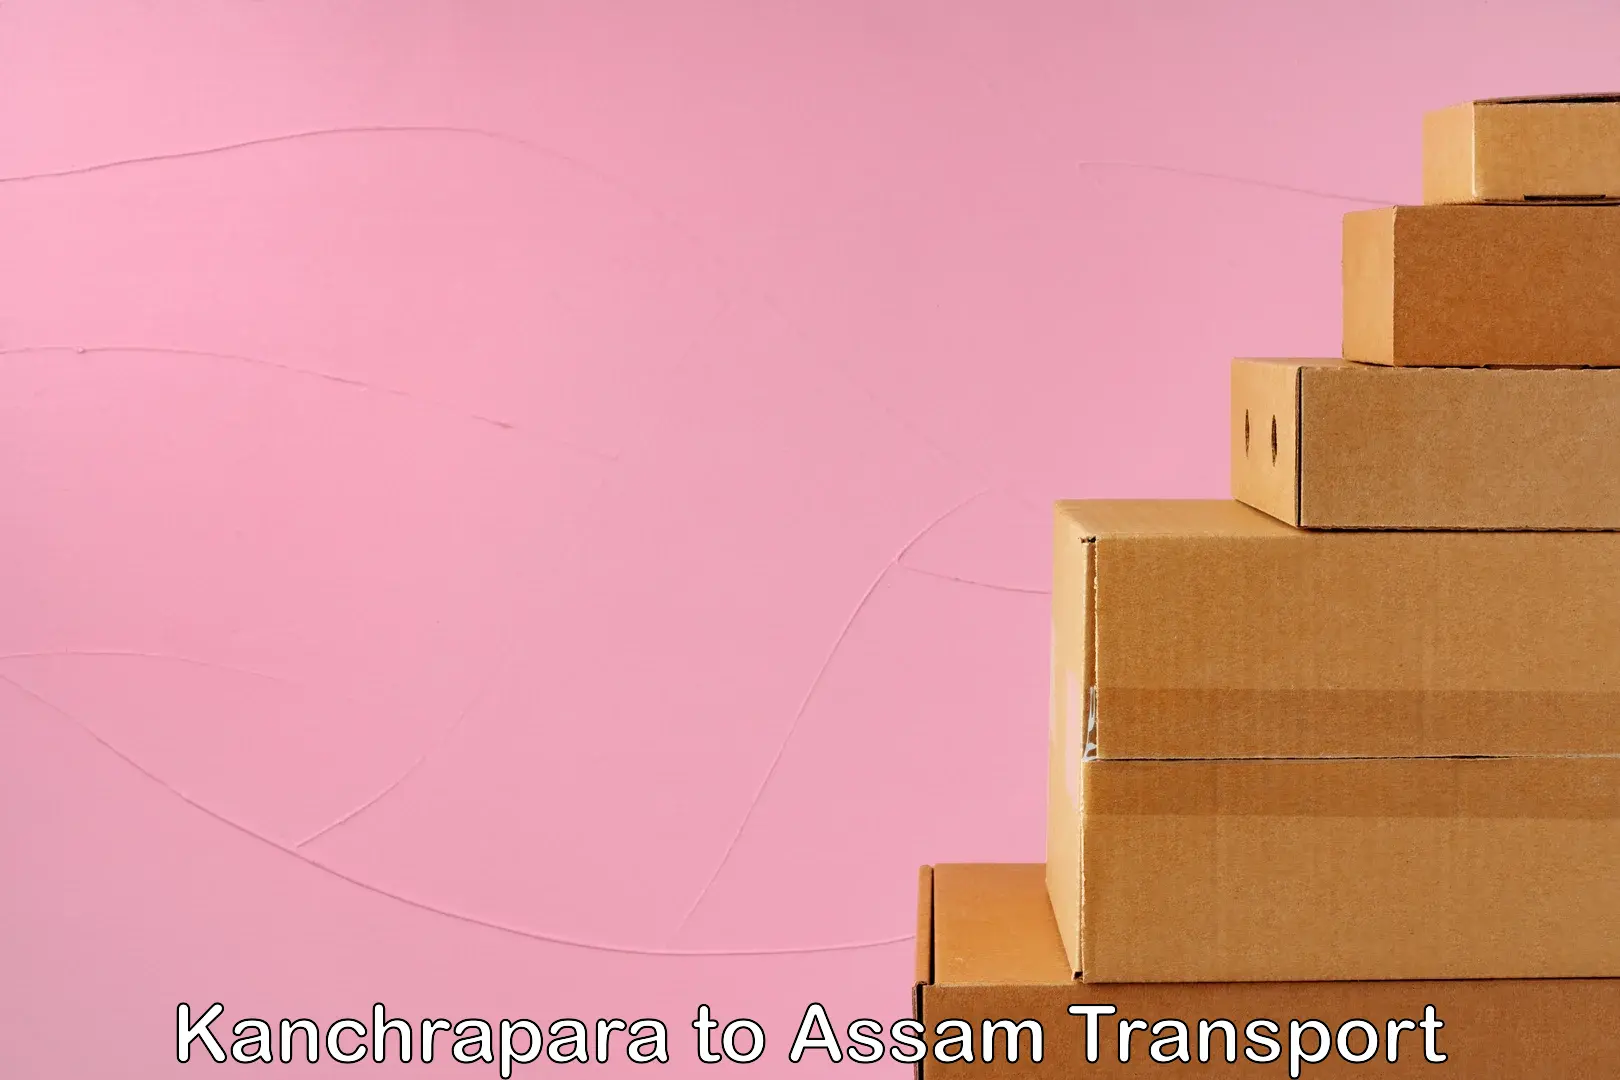 Furniture transport service Kanchrapara to Duliajan